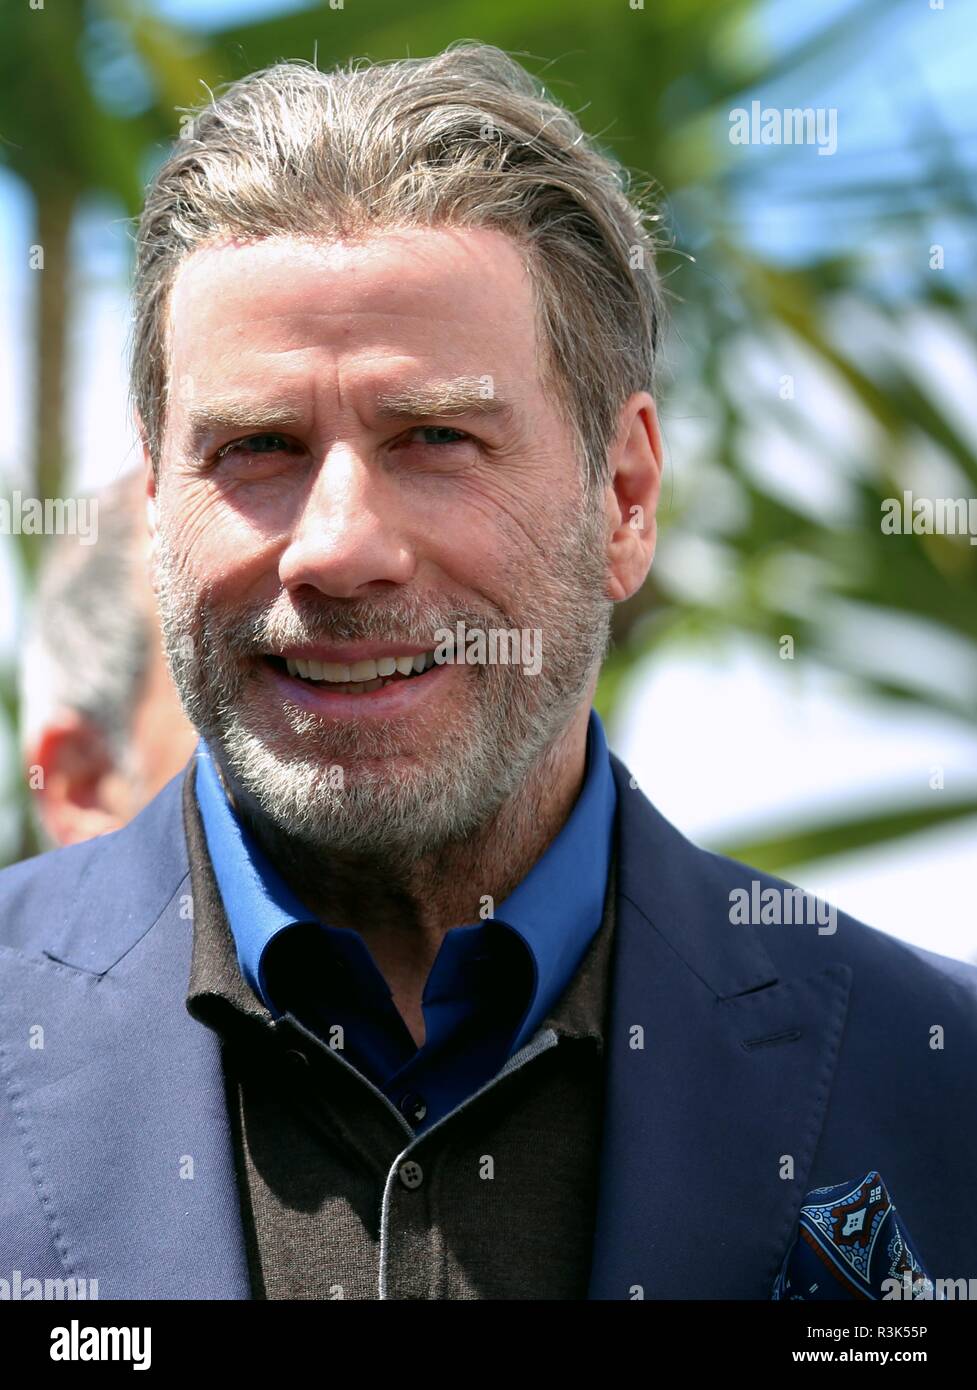 CANNES, Francia - 15 Maggio 2018: John Travolta al "Gotti' photocall durante la settantunesima Cannes Film Festival (foto di Mickael Chavet) Foto Stock